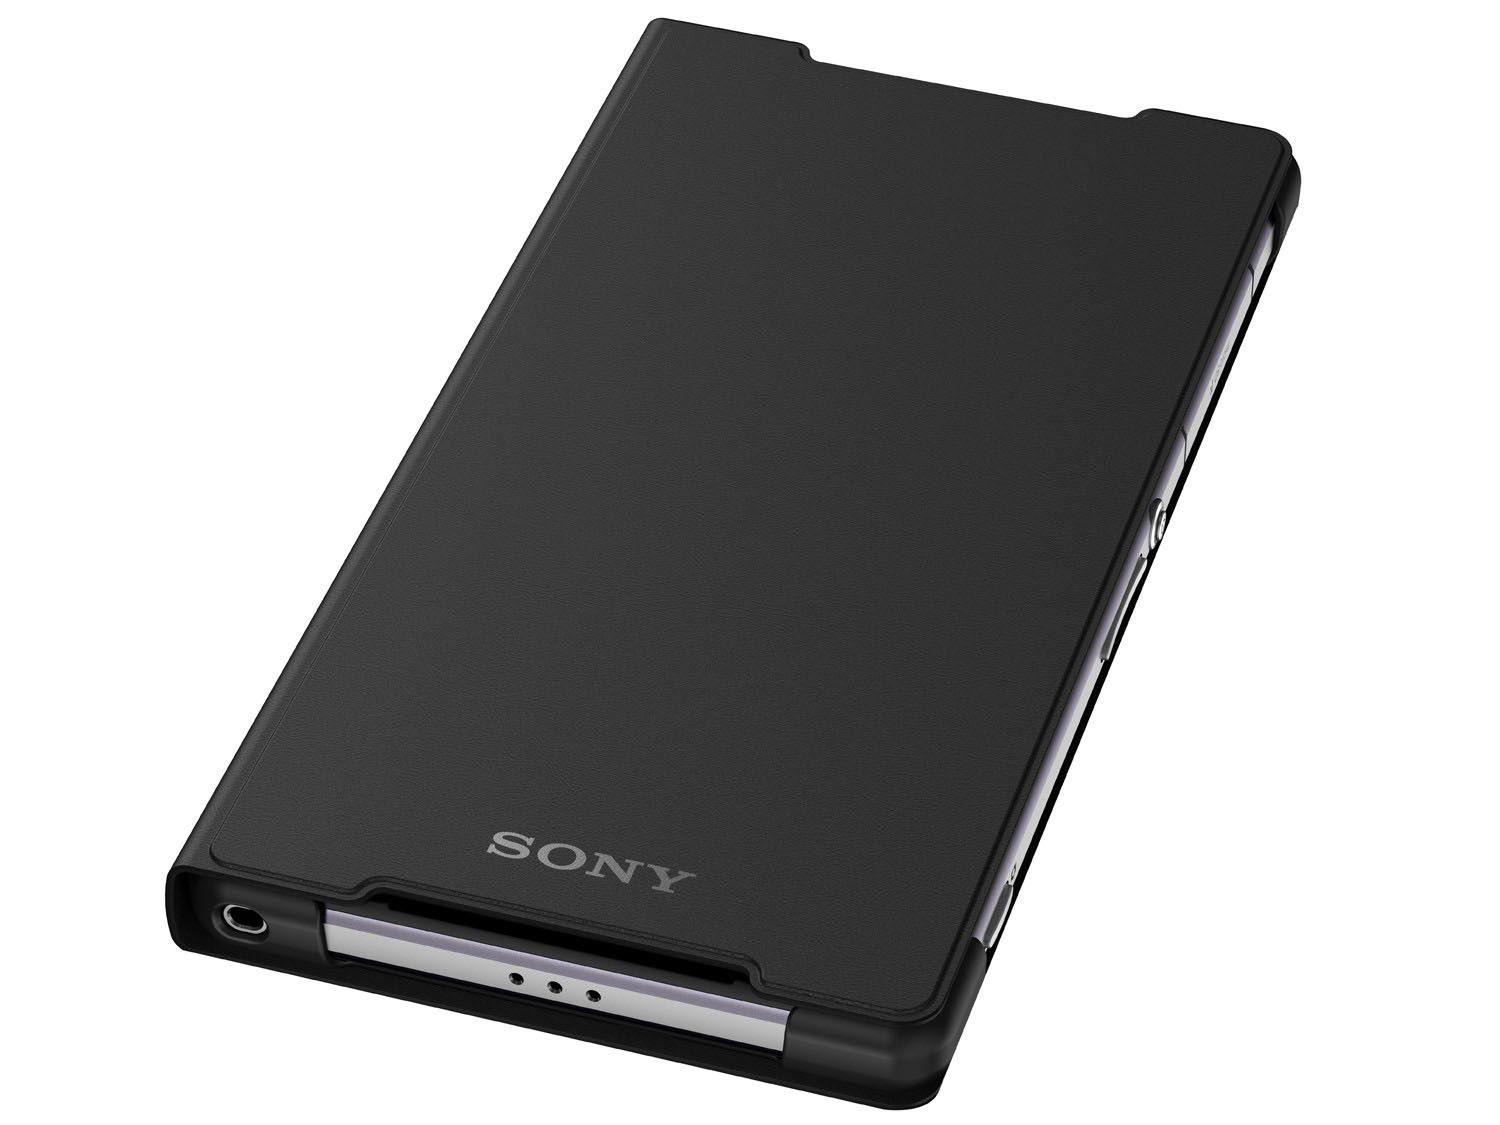 Чехол xperia 10. Sony Xperia z2 Black. Sony Xperia z2 чехол книжка. Чехол для телефона сони Xperia z2. Чехол Sony scr12.